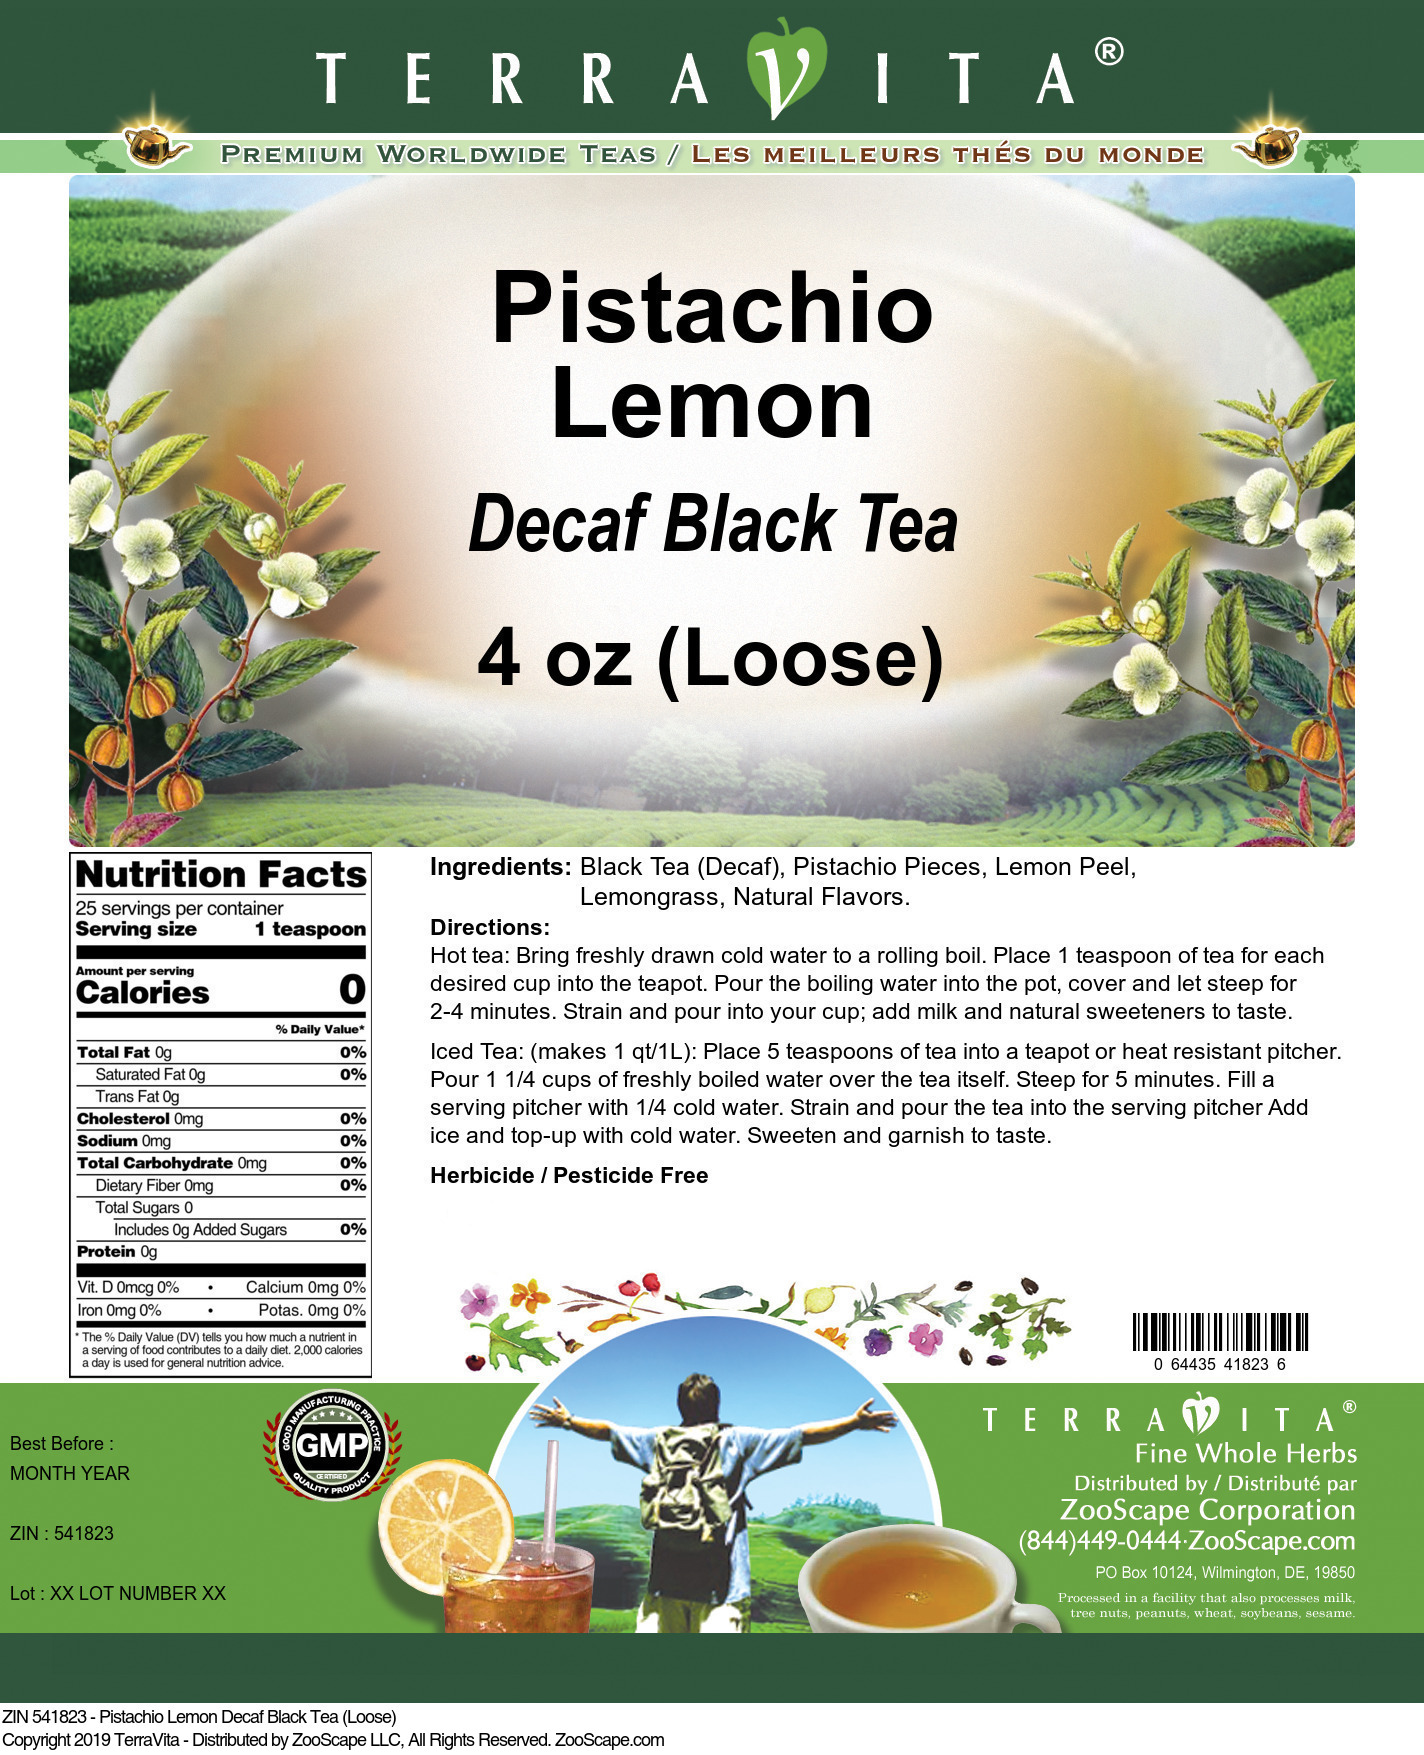 Pistachio Lemon Decaf Black Tea (Loose) - Label